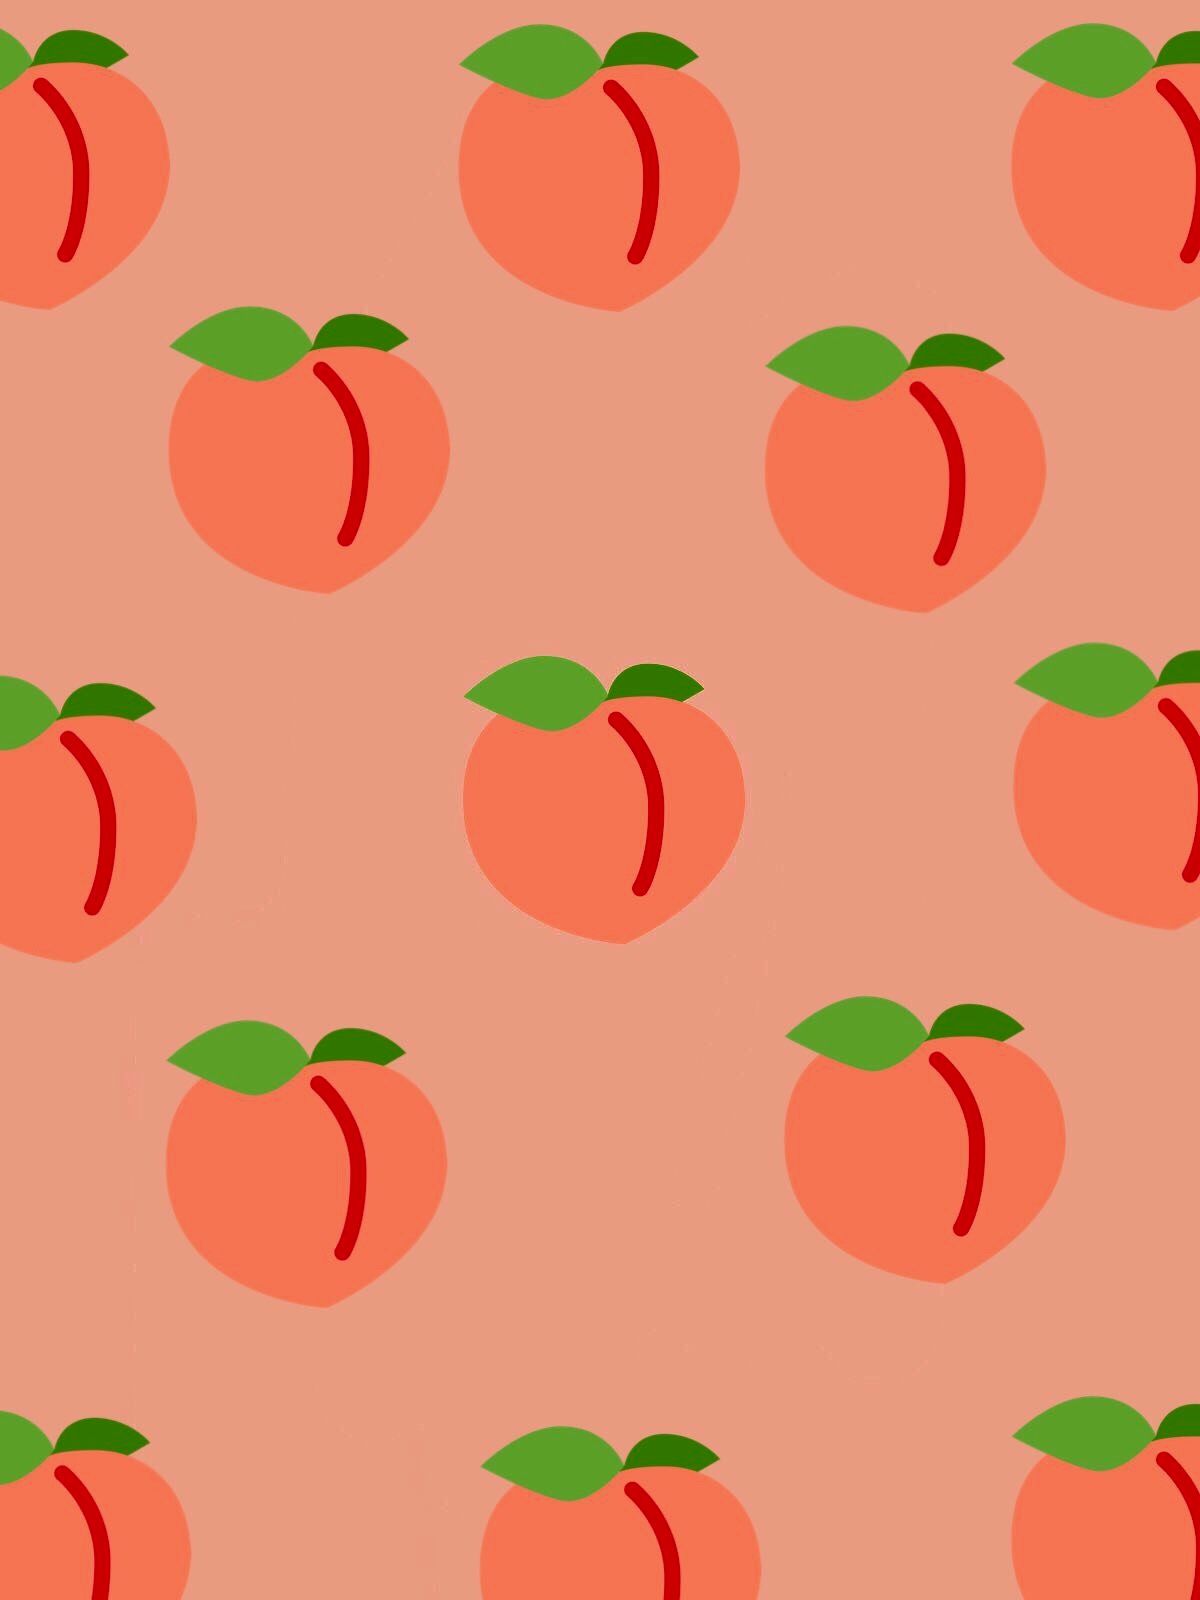 Fruit Aesthetic Wallpaper